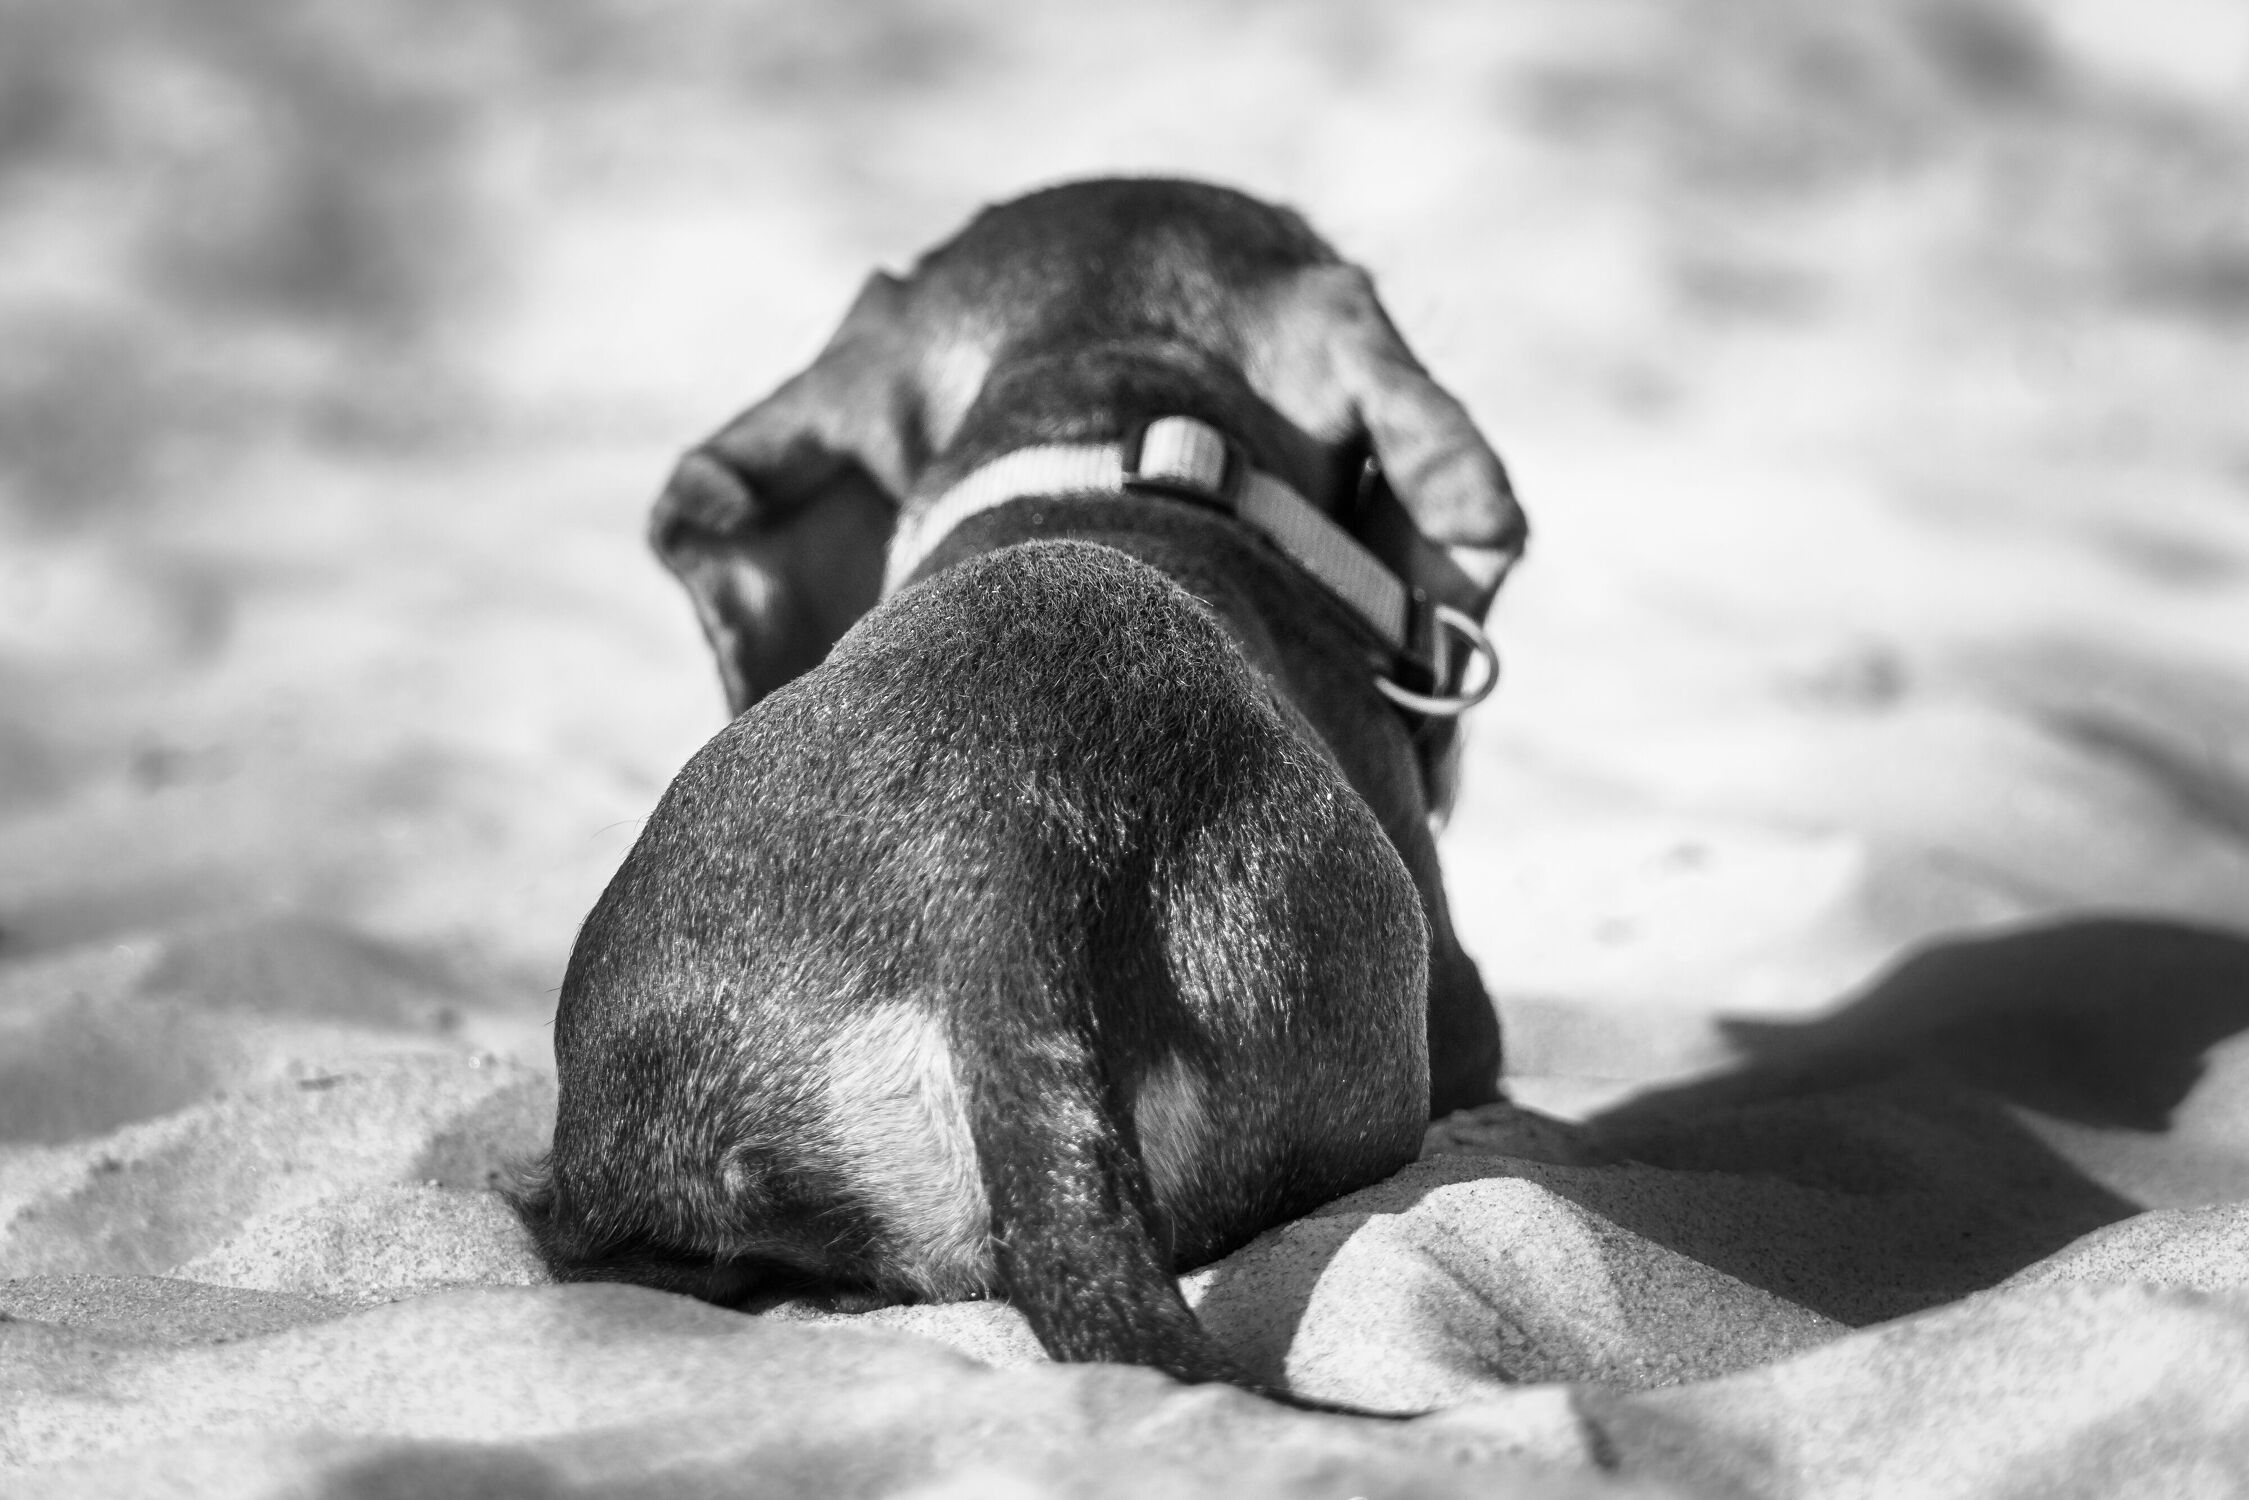 Bild mit Strände, Hunde, Spiele und Spielzeuge, Strand, Sandstrand, Hund, Haushund, Lebensfreude, Schwarz/Weiß Fotografie